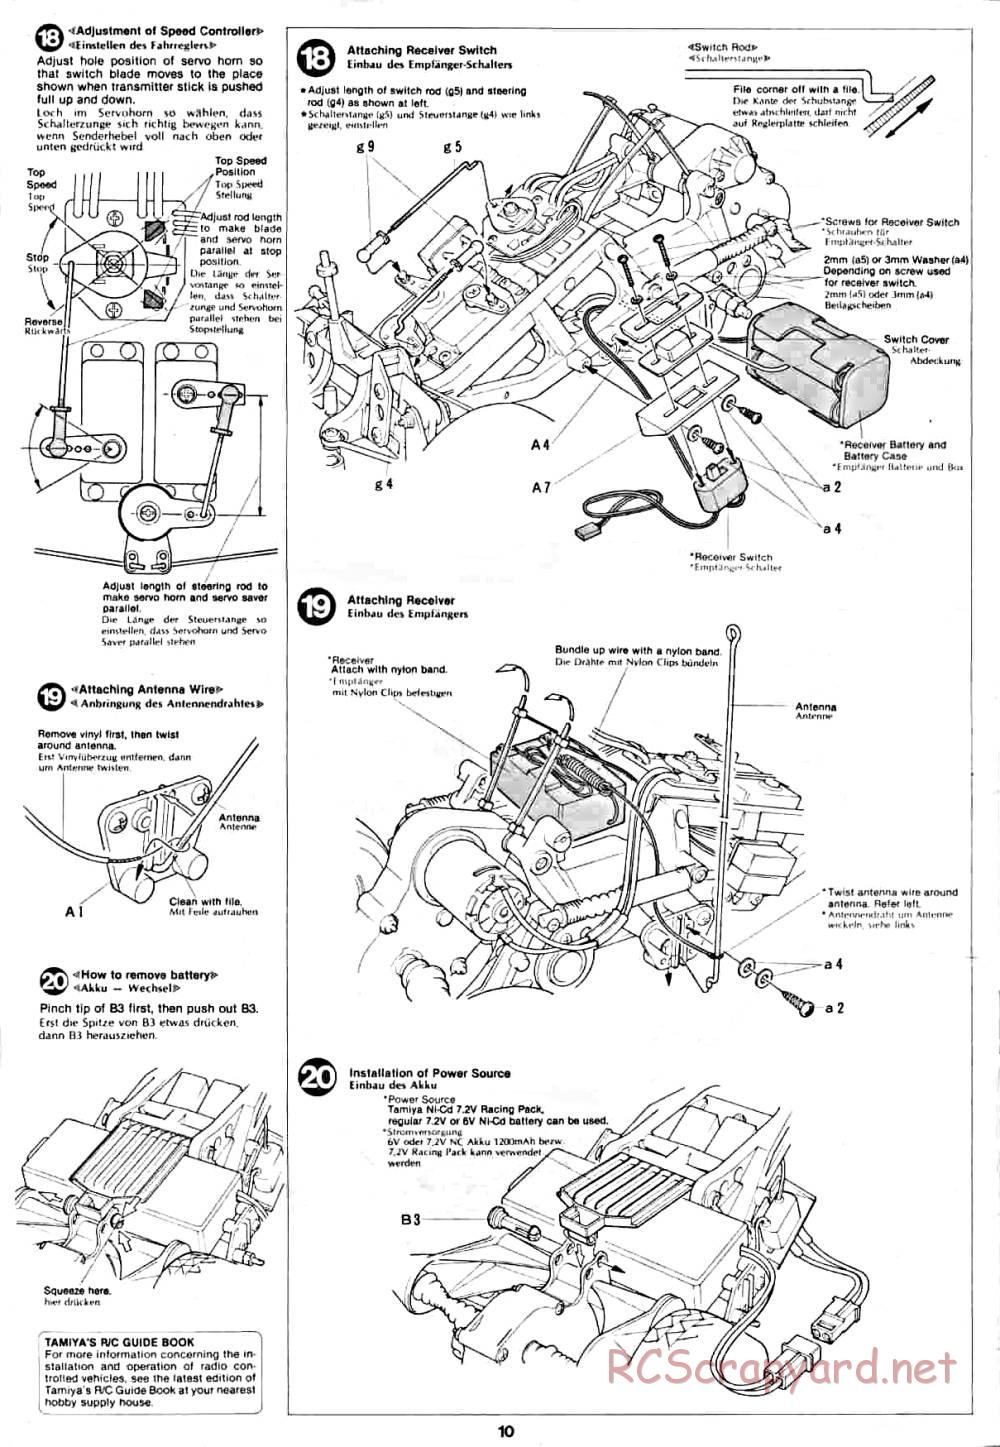 Tamiya - Lancia Rally - 58040 - Manual - Page 10